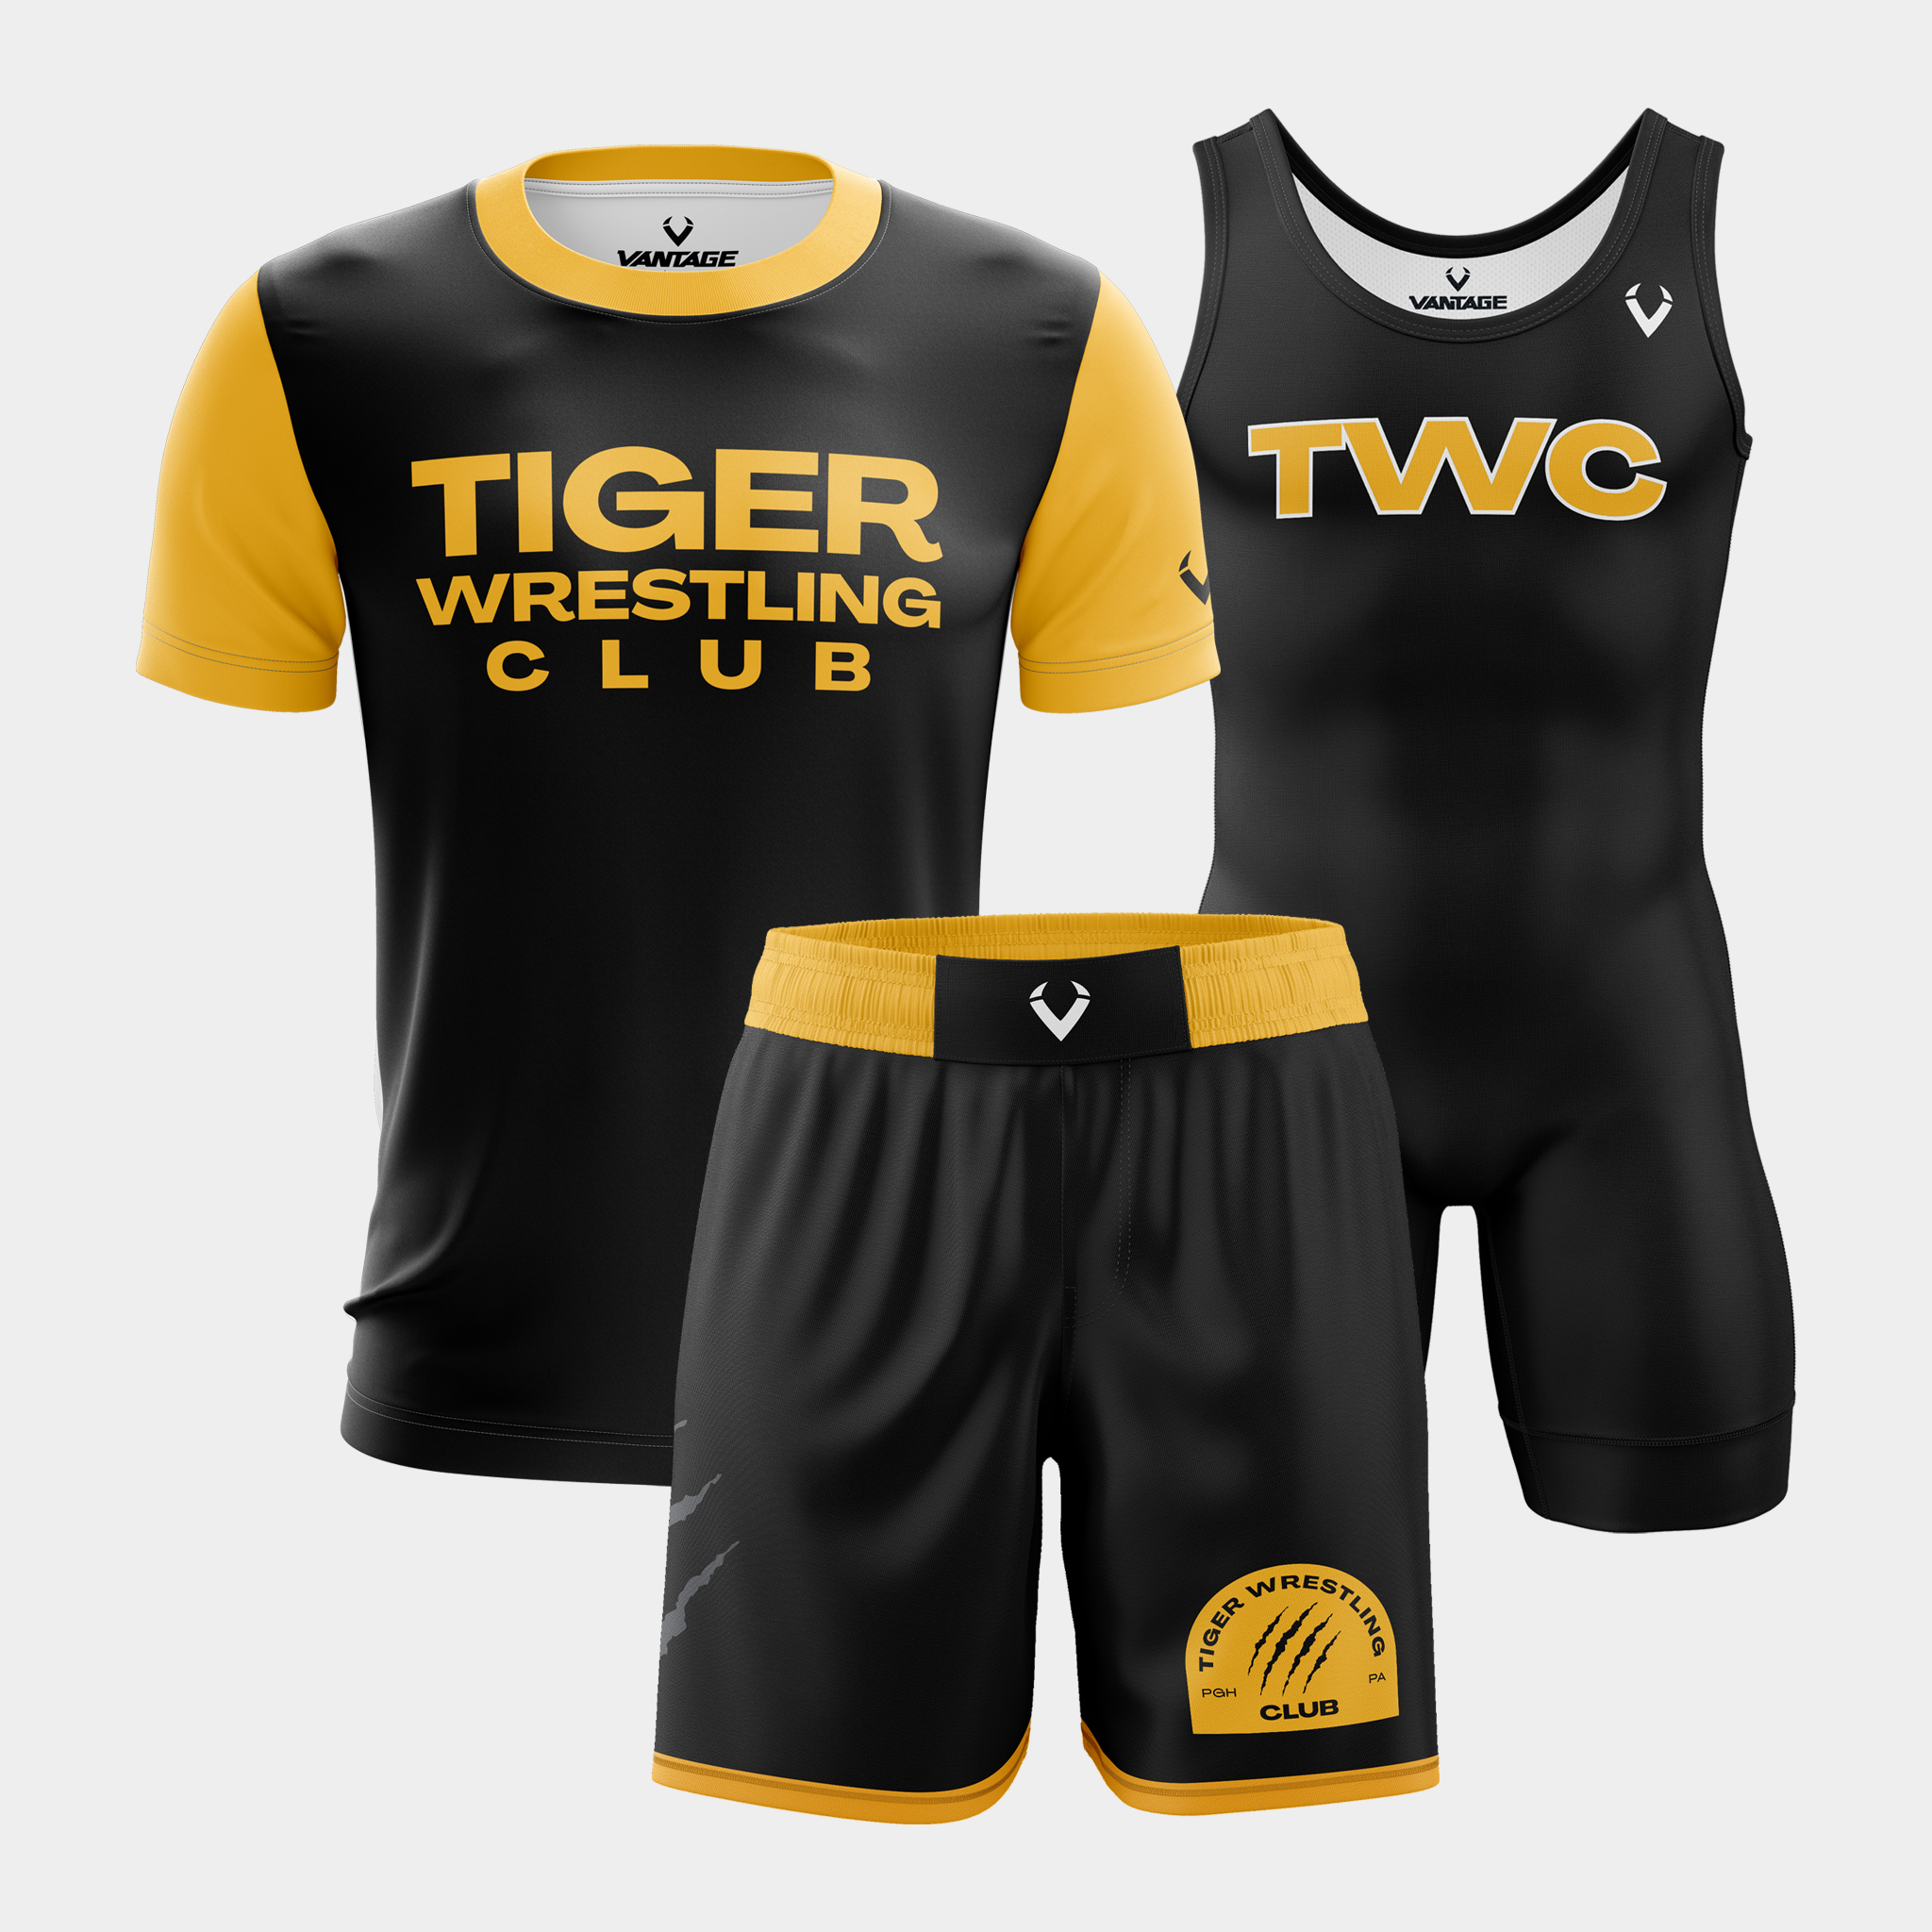 Tiger Wrestling Club - Match Day Bundle